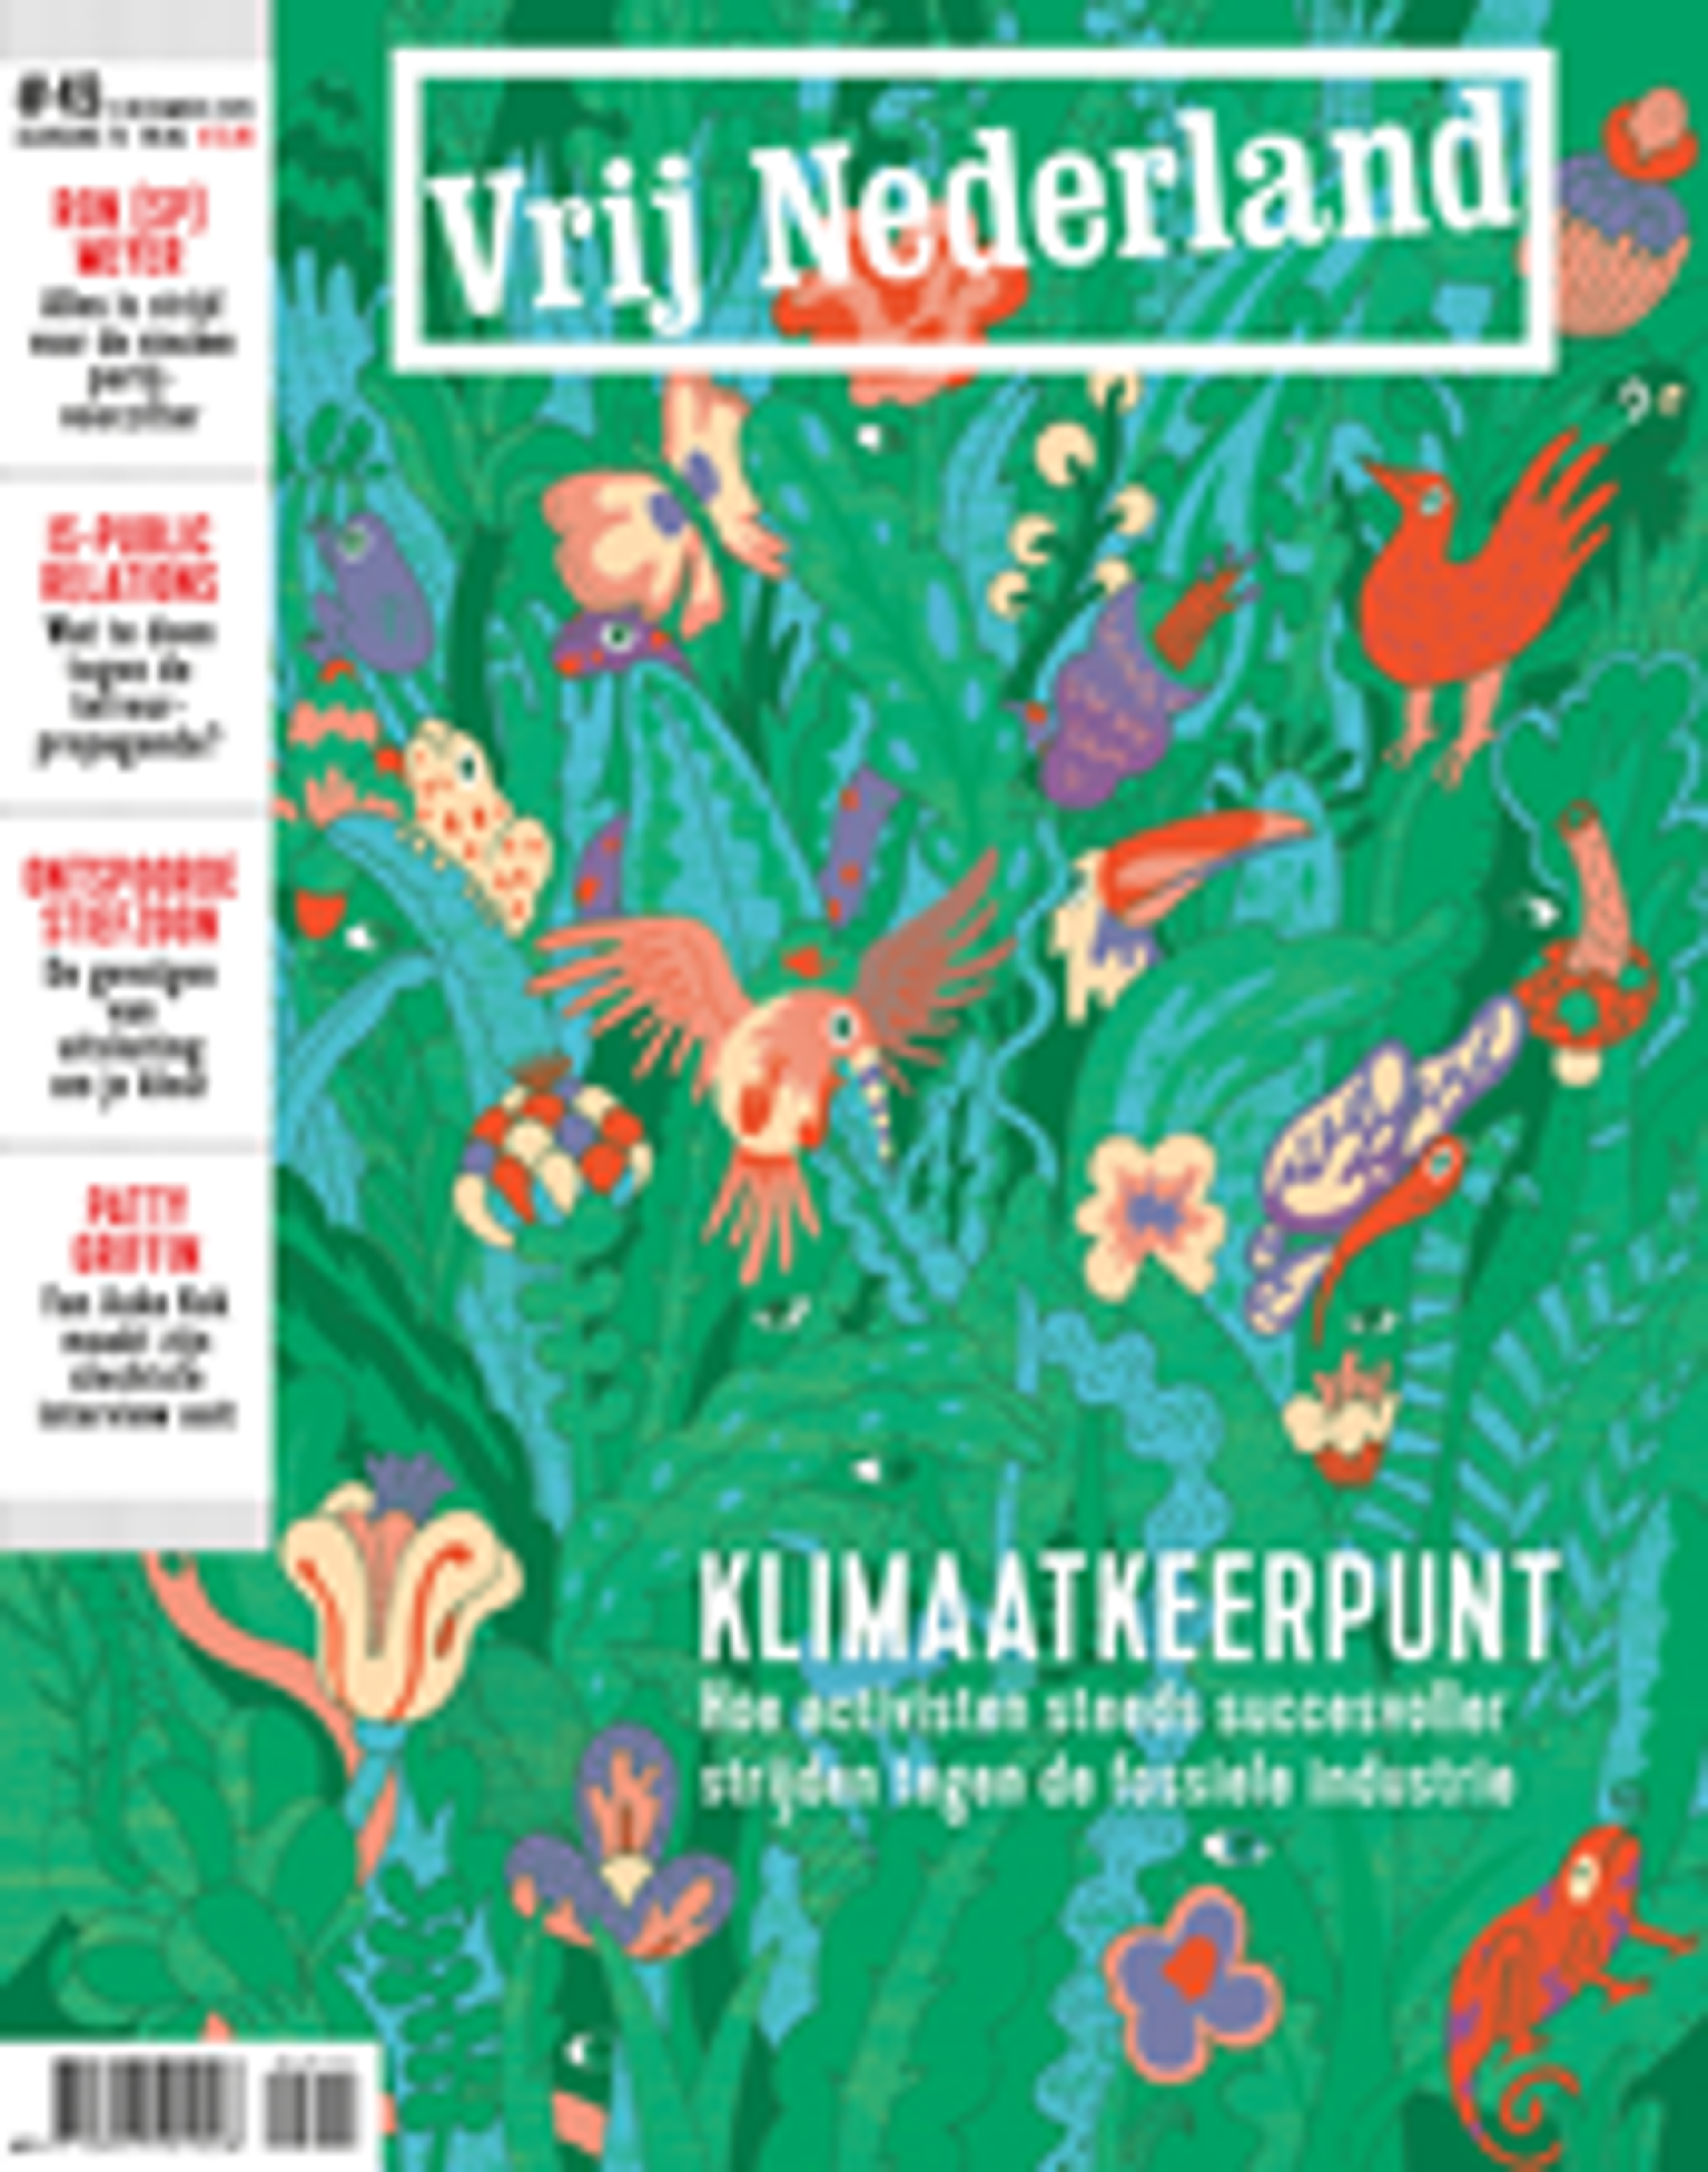 Vrij Nederland vernieuwt en wordt in de loop van 2016 een maandblad